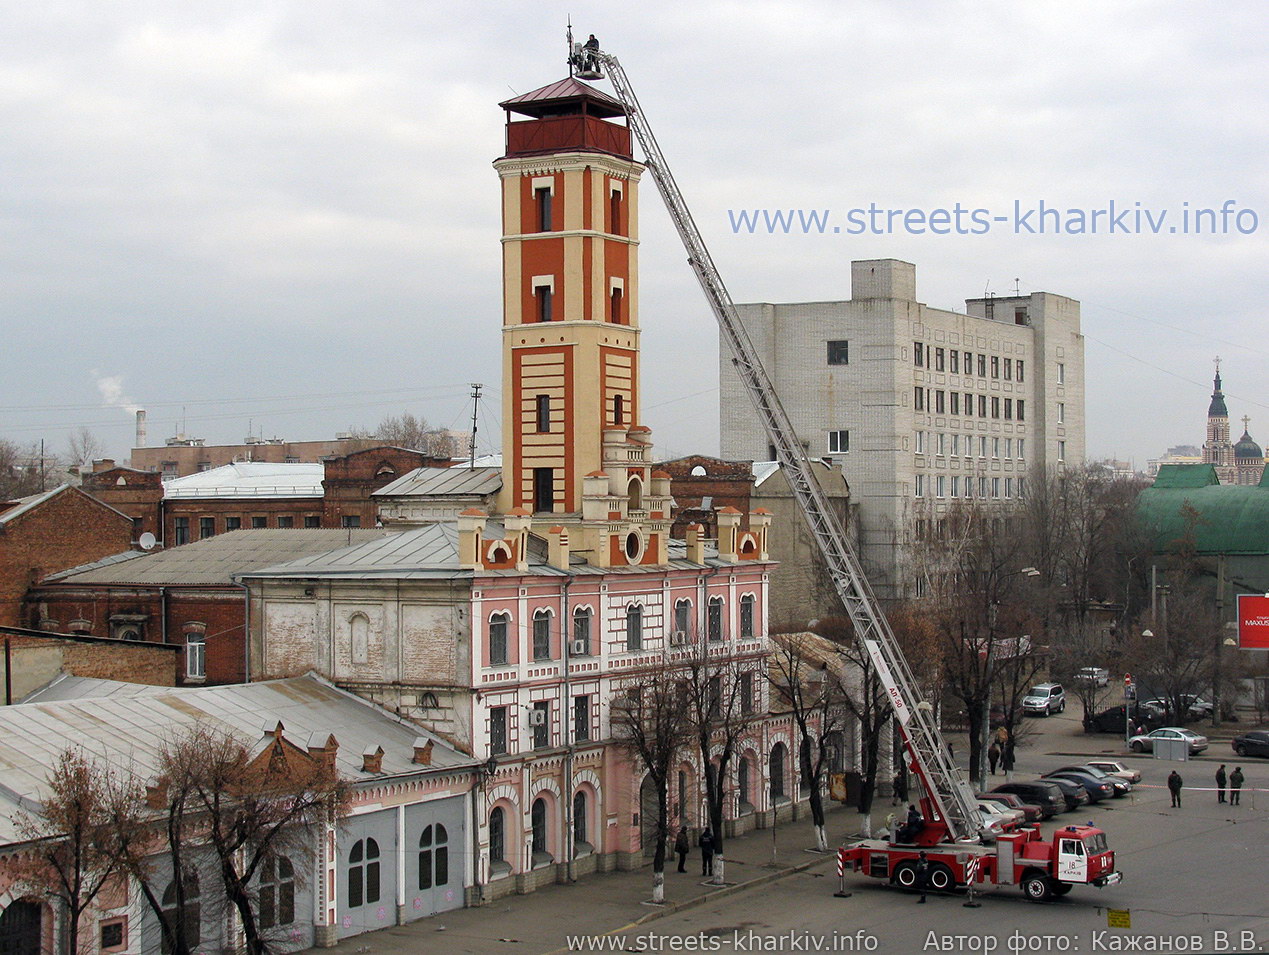 Установка флюгера на пожарной части в Харькове, 25 ноября 2011 г.